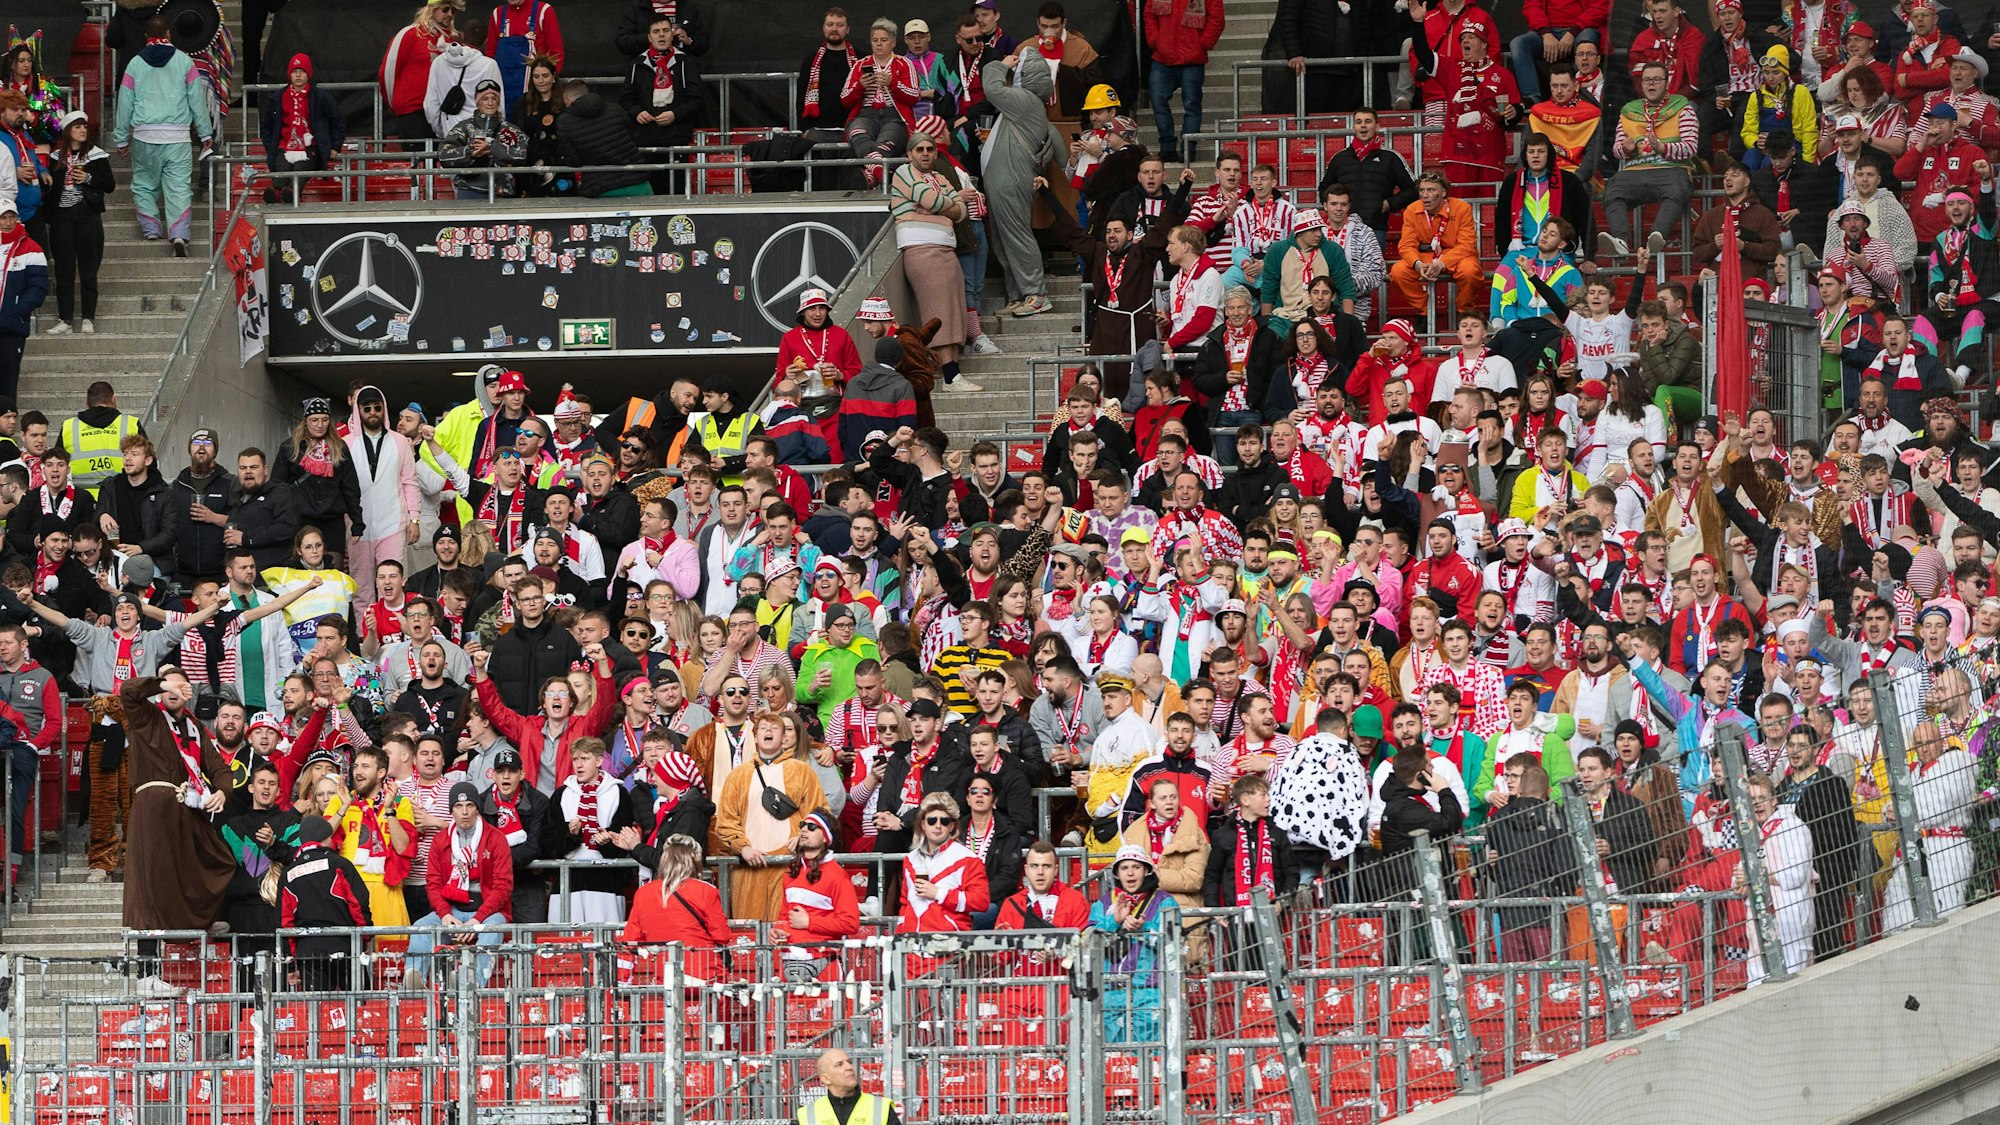 Der Kölner Fanblock am Samstag beim Spiel gegen den VfB Stuttgart in der Mercedes-Benz-Arena. Viele Fans sind verkleidet, auf der Rückfahrt tranken dieKölner das Bordbistro des ICE leer.